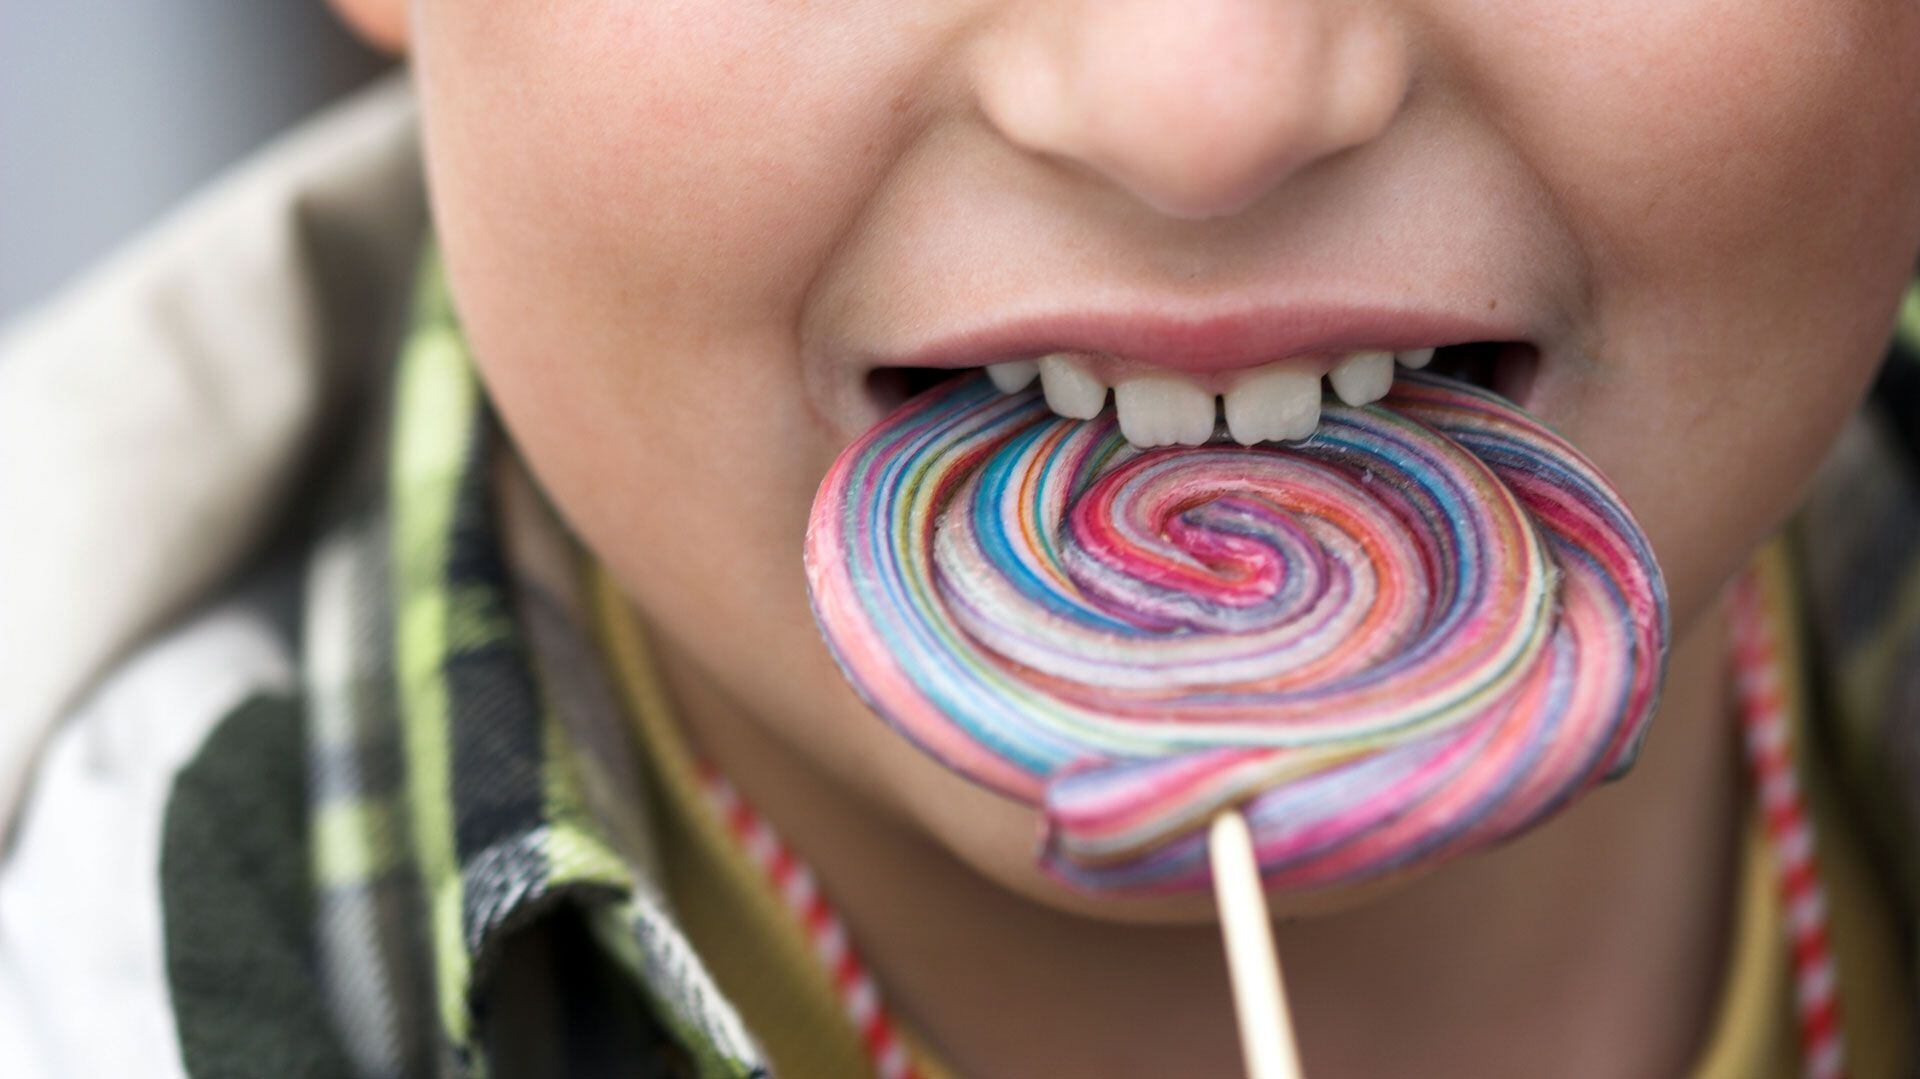 Una investigación exploró los efectos del consumo de bebidas azucaradas en niños (Shutterstock)